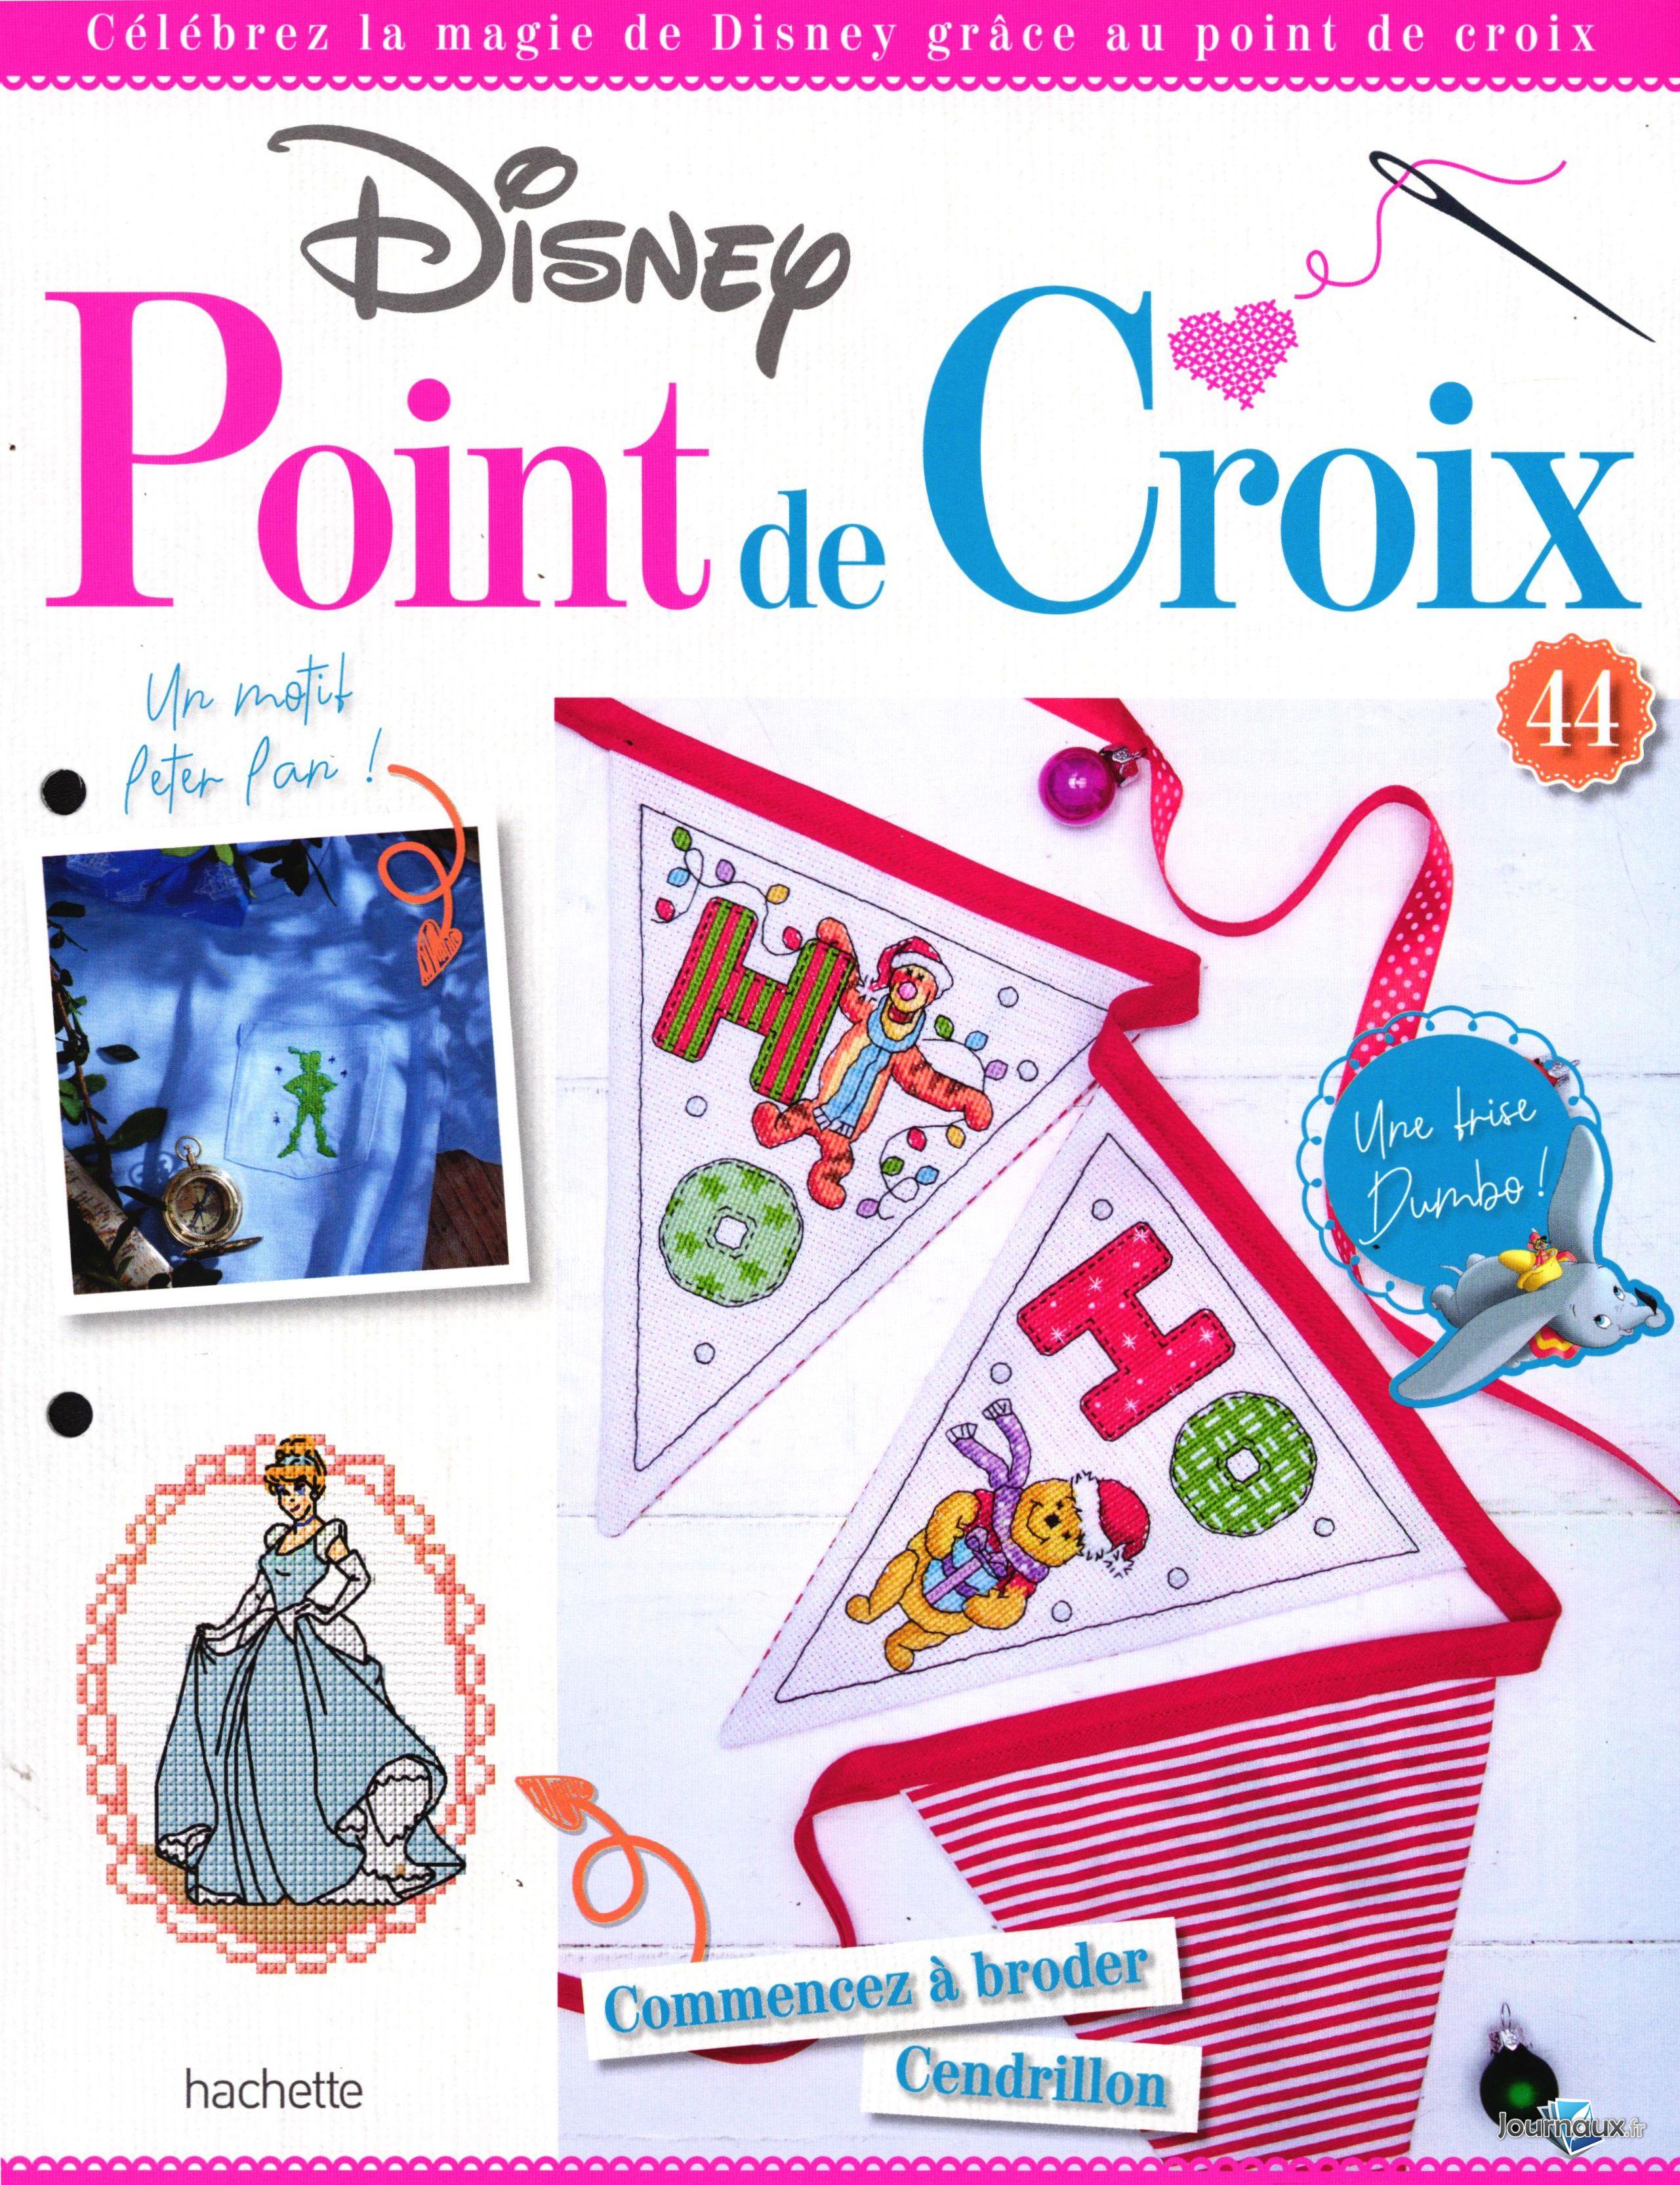  Disney Point de Croix